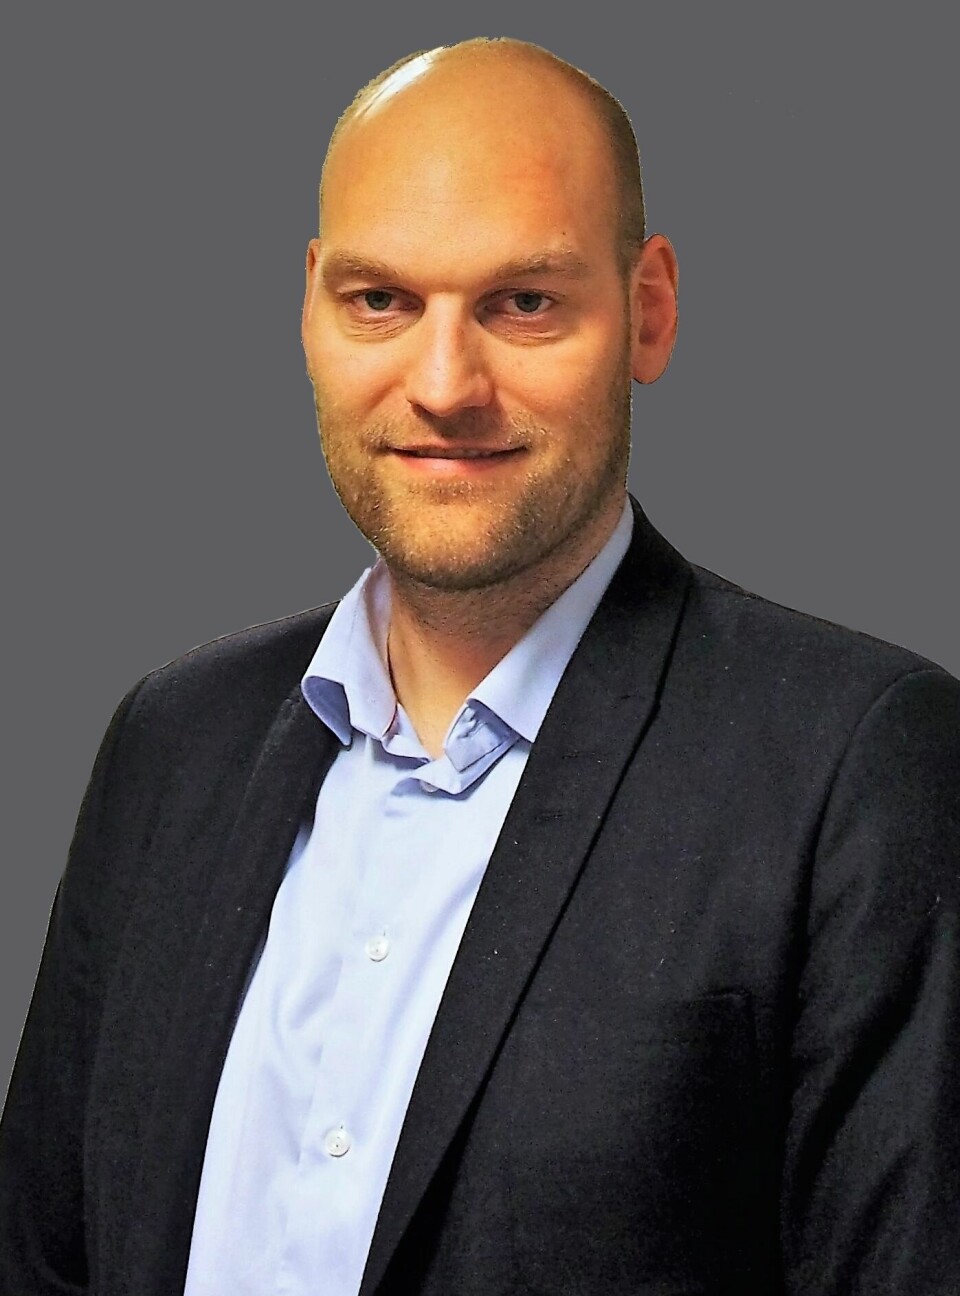 SJEFEN: Stian Hessevik er daglig leder i driftsselskapet 4human It. (Pressefoto)